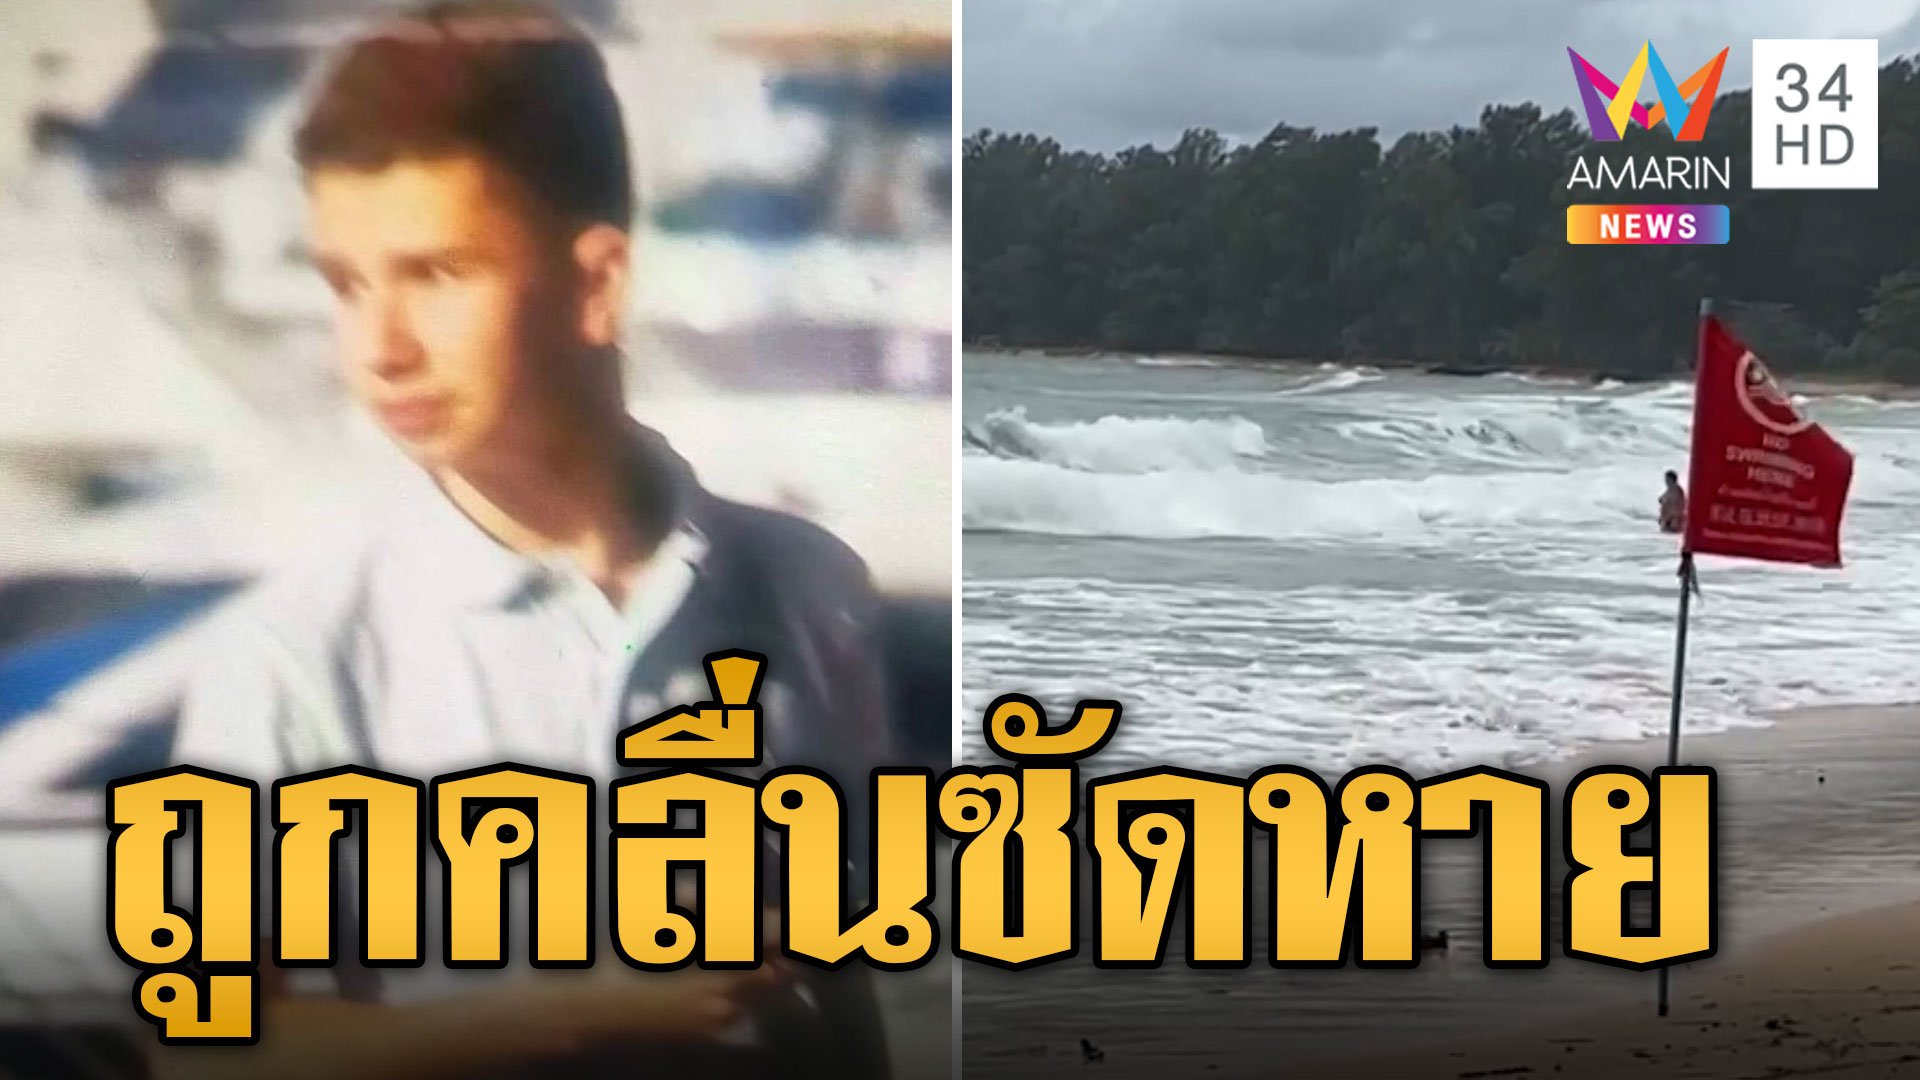 เร่งค้นหา นทท.ฝ่าธงแดงริมหาด ลงเล่นน้ำถูกคลื่นซัดหาย | ข่าวอรุณอมรินทร์ | 3 ก.ย. 66 | AMARIN TVHD34